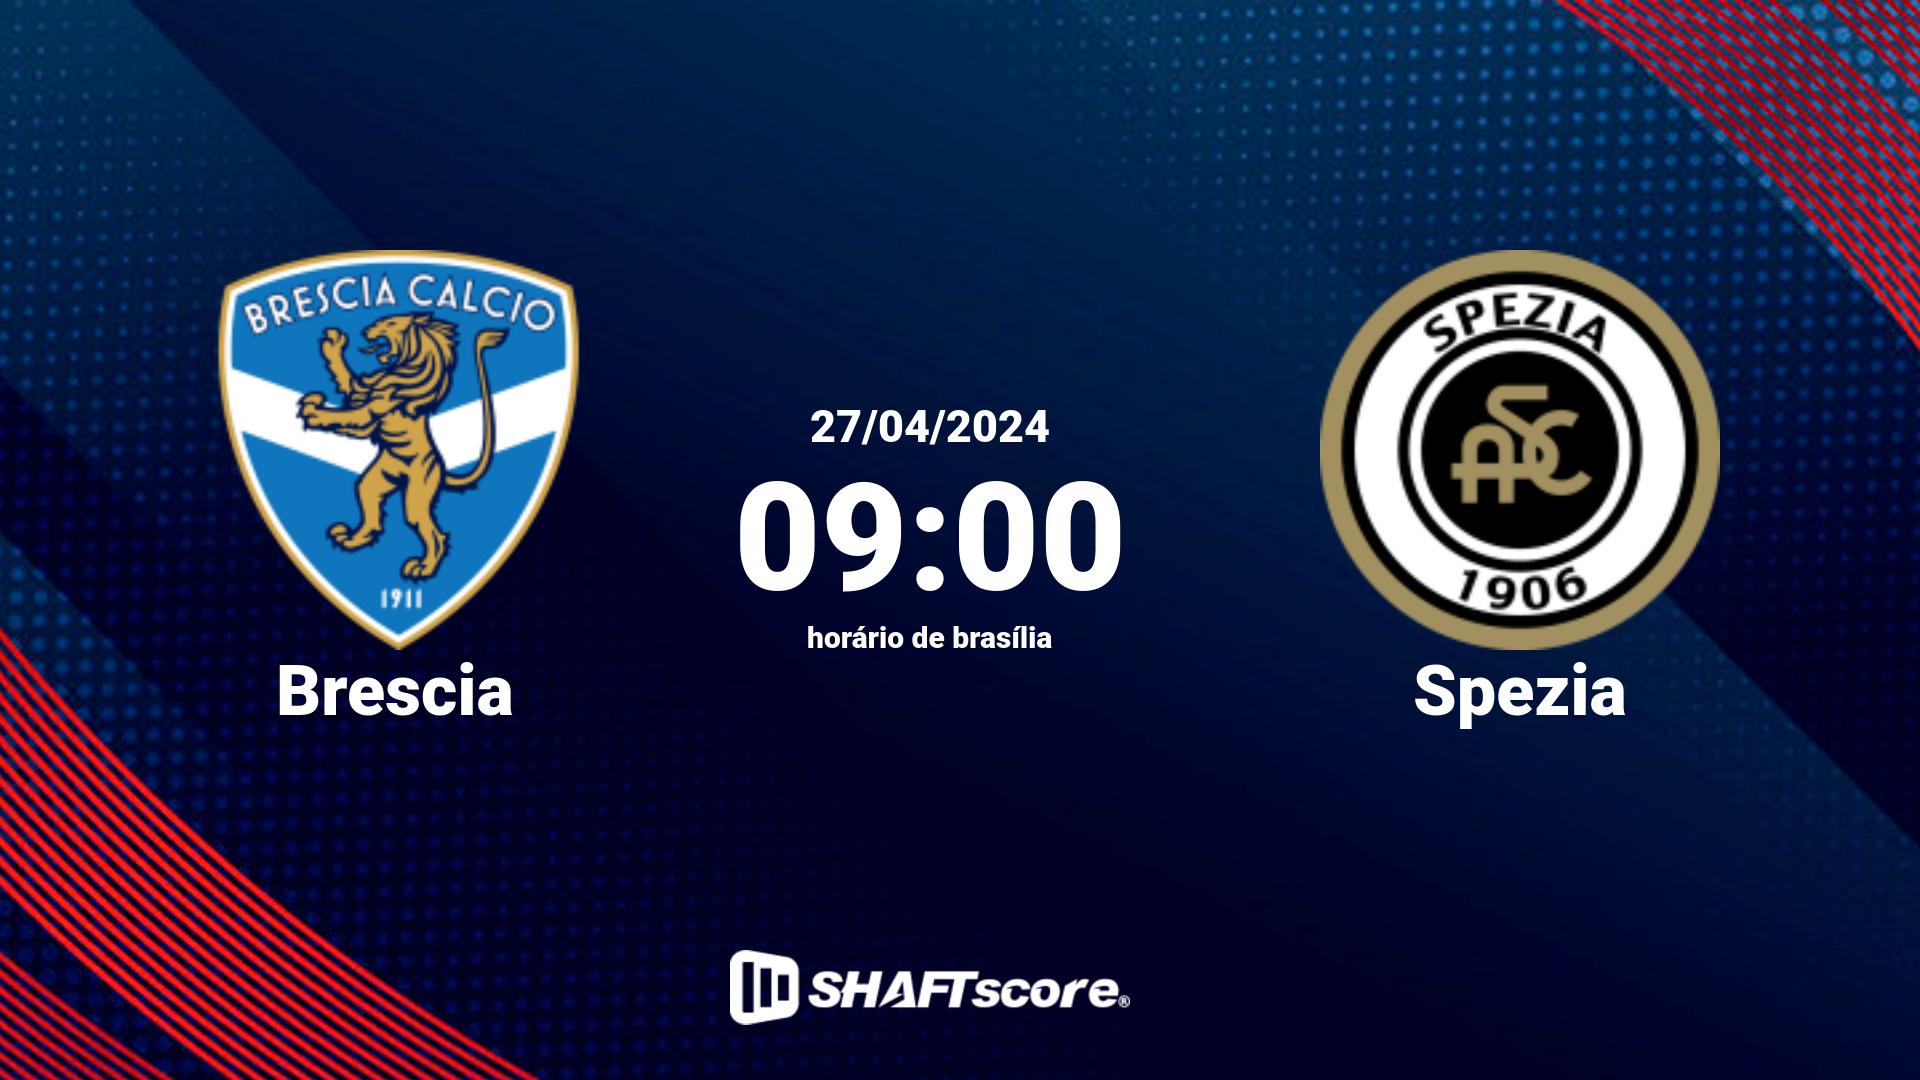 Estatísticas do jogo Brescia vs Spezia 27.04 09:00